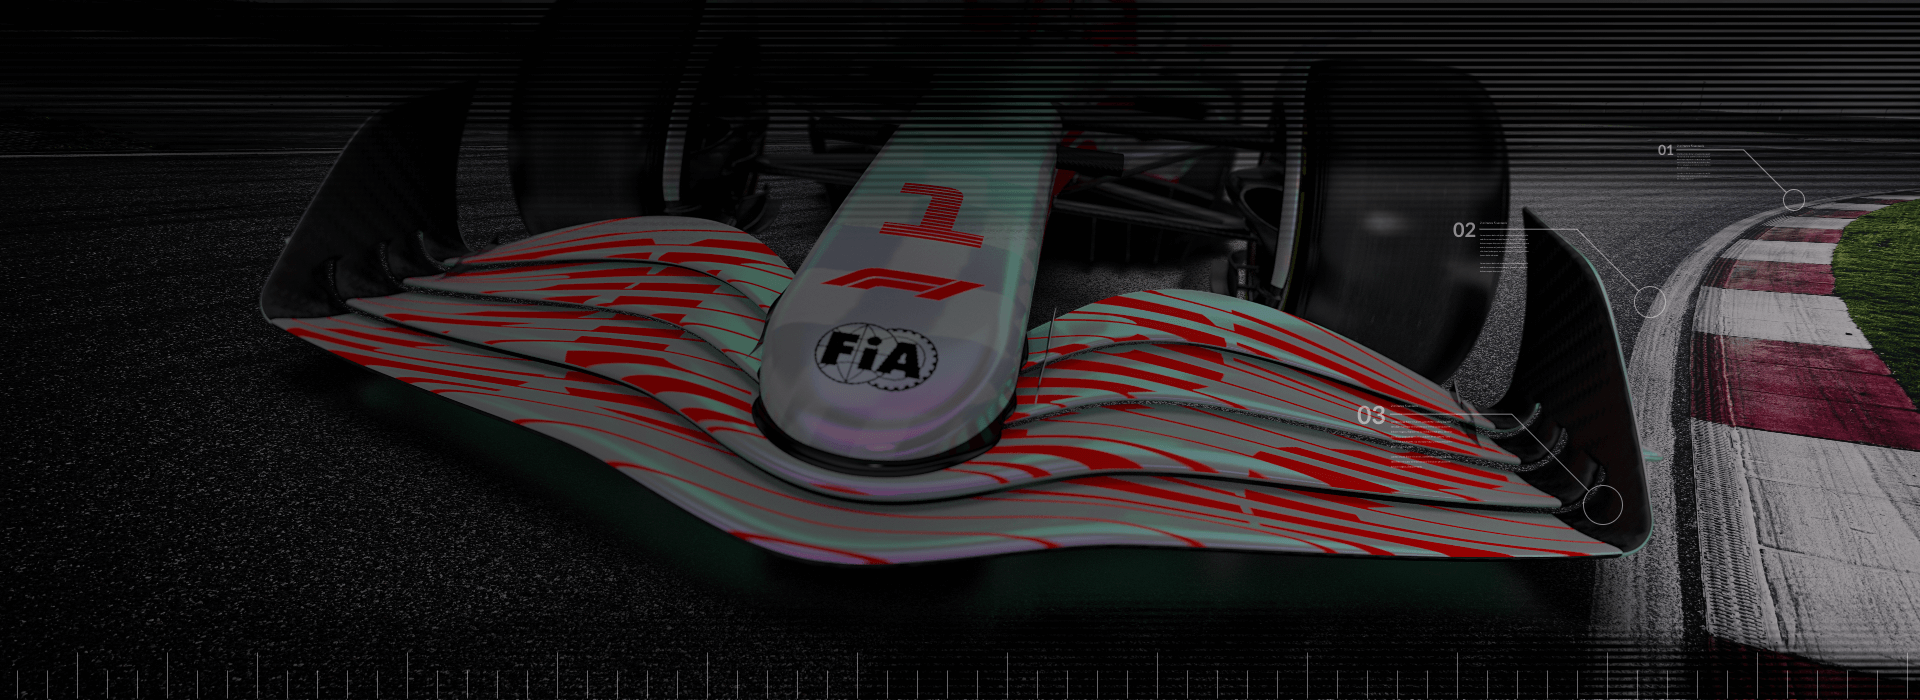 Primer plano de un coche de F1 conduciendo en la curva de una pista de carreras.